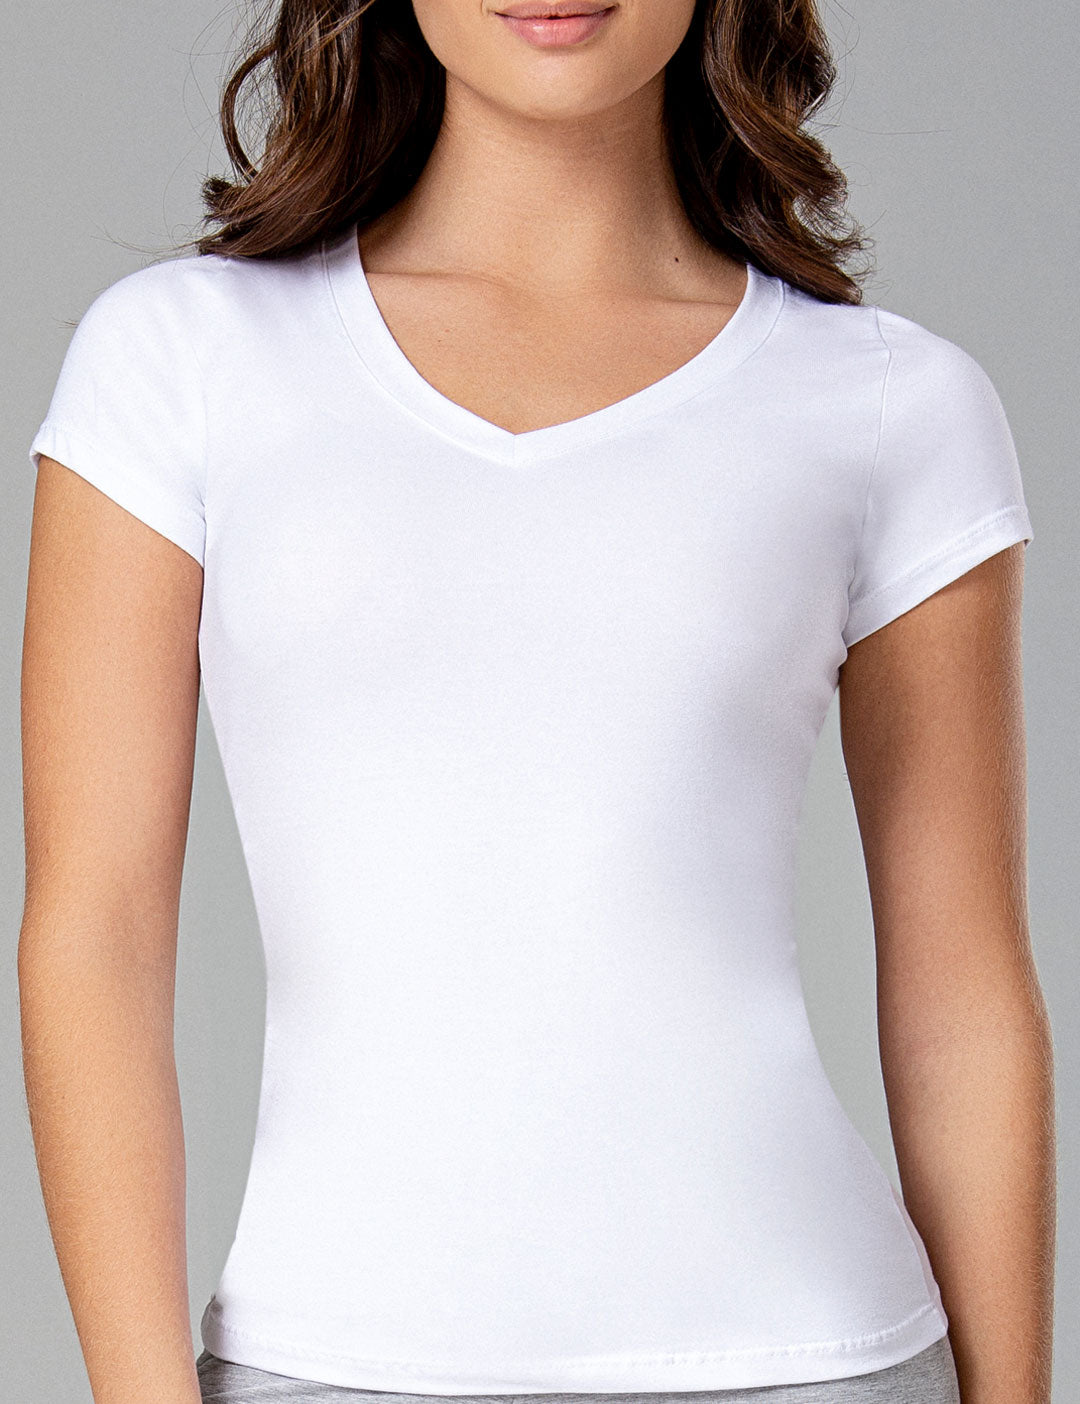 Camiseta básica de mujer blanca